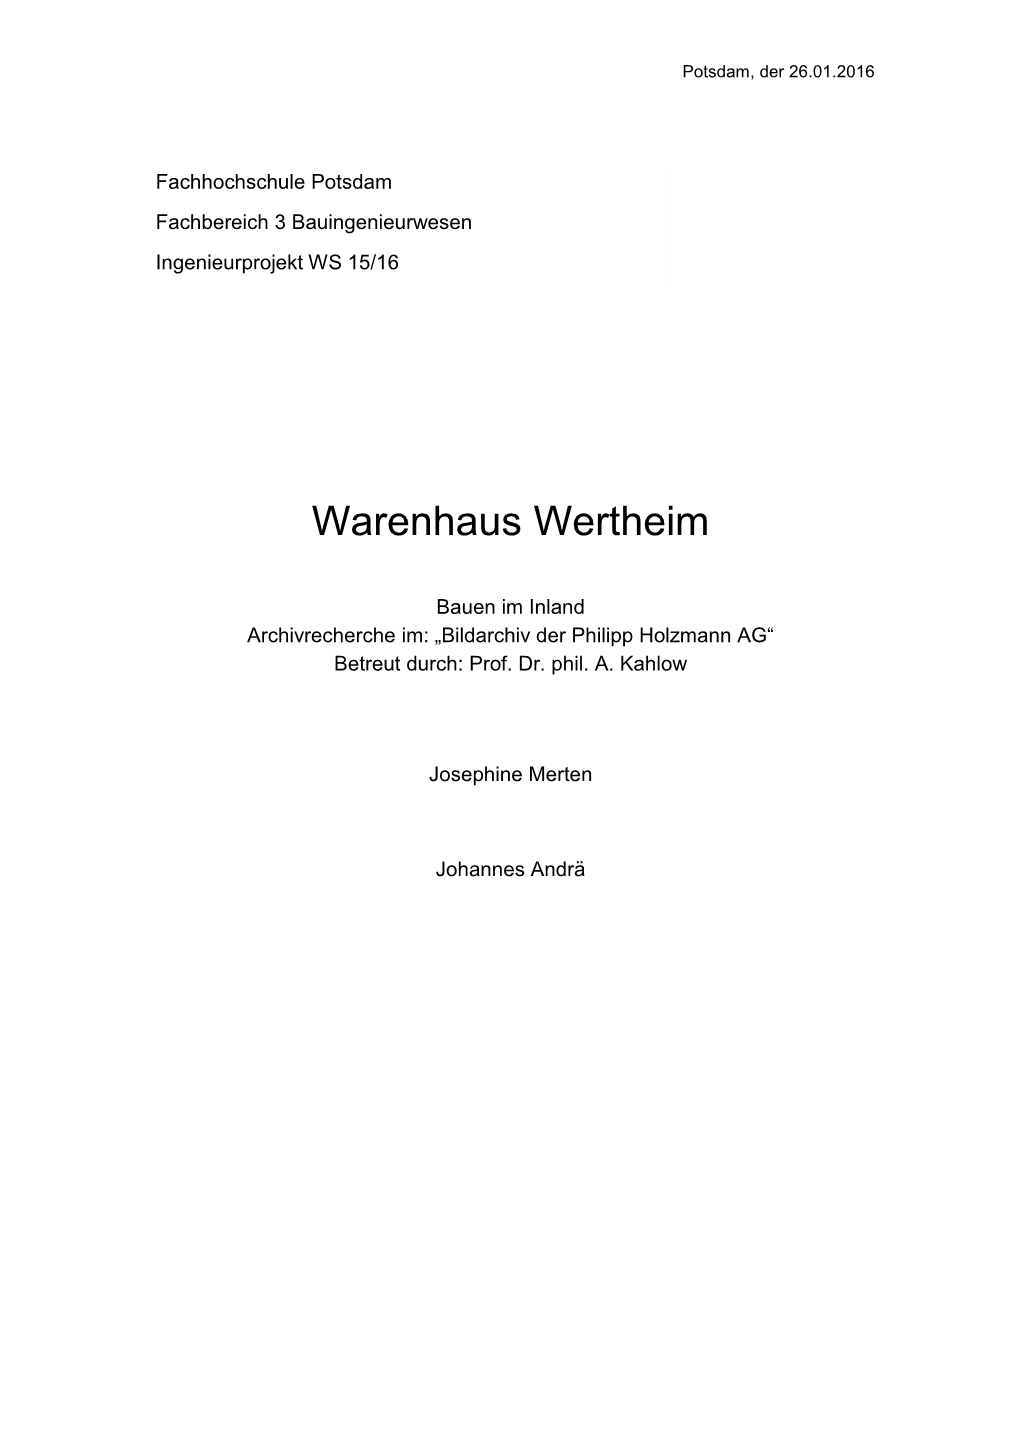 Warenhaus-Wertheim